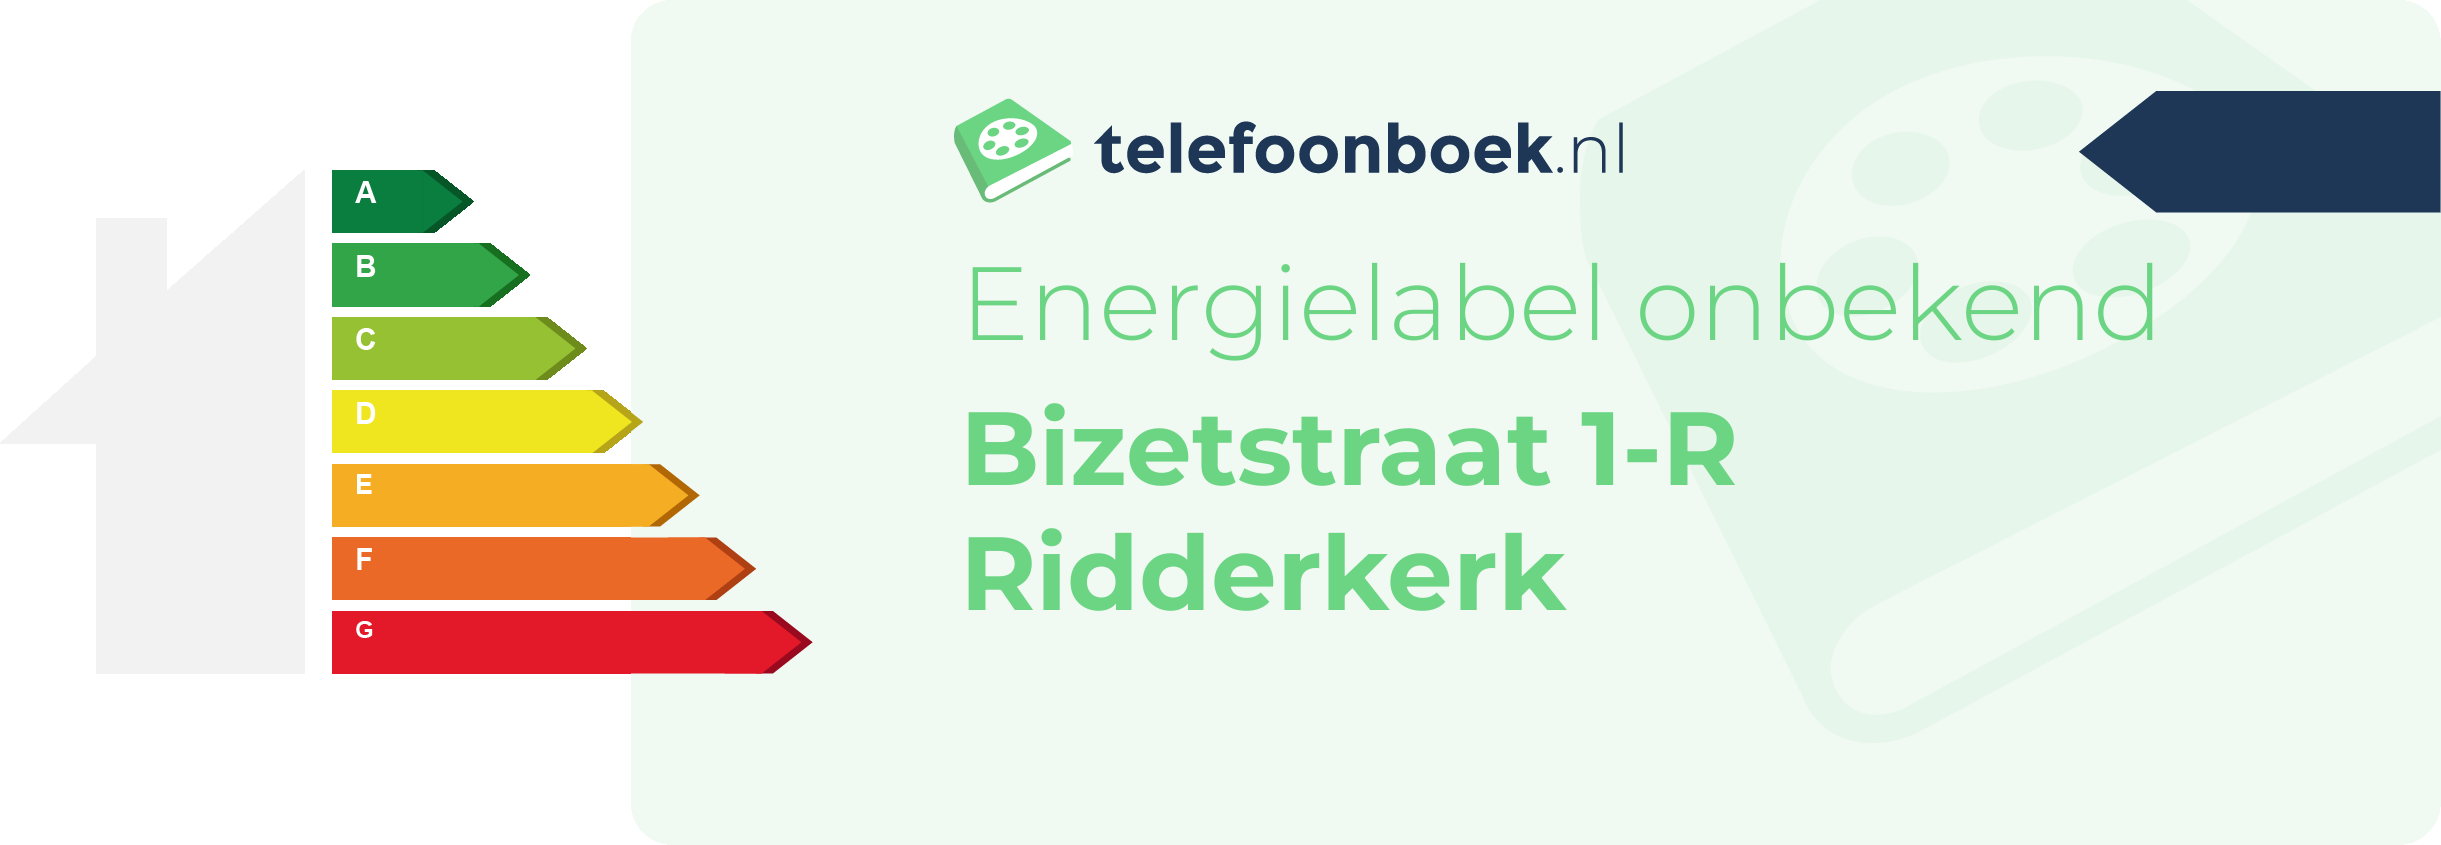 Energielabel Bizetstraat 1-R Ridderkerk